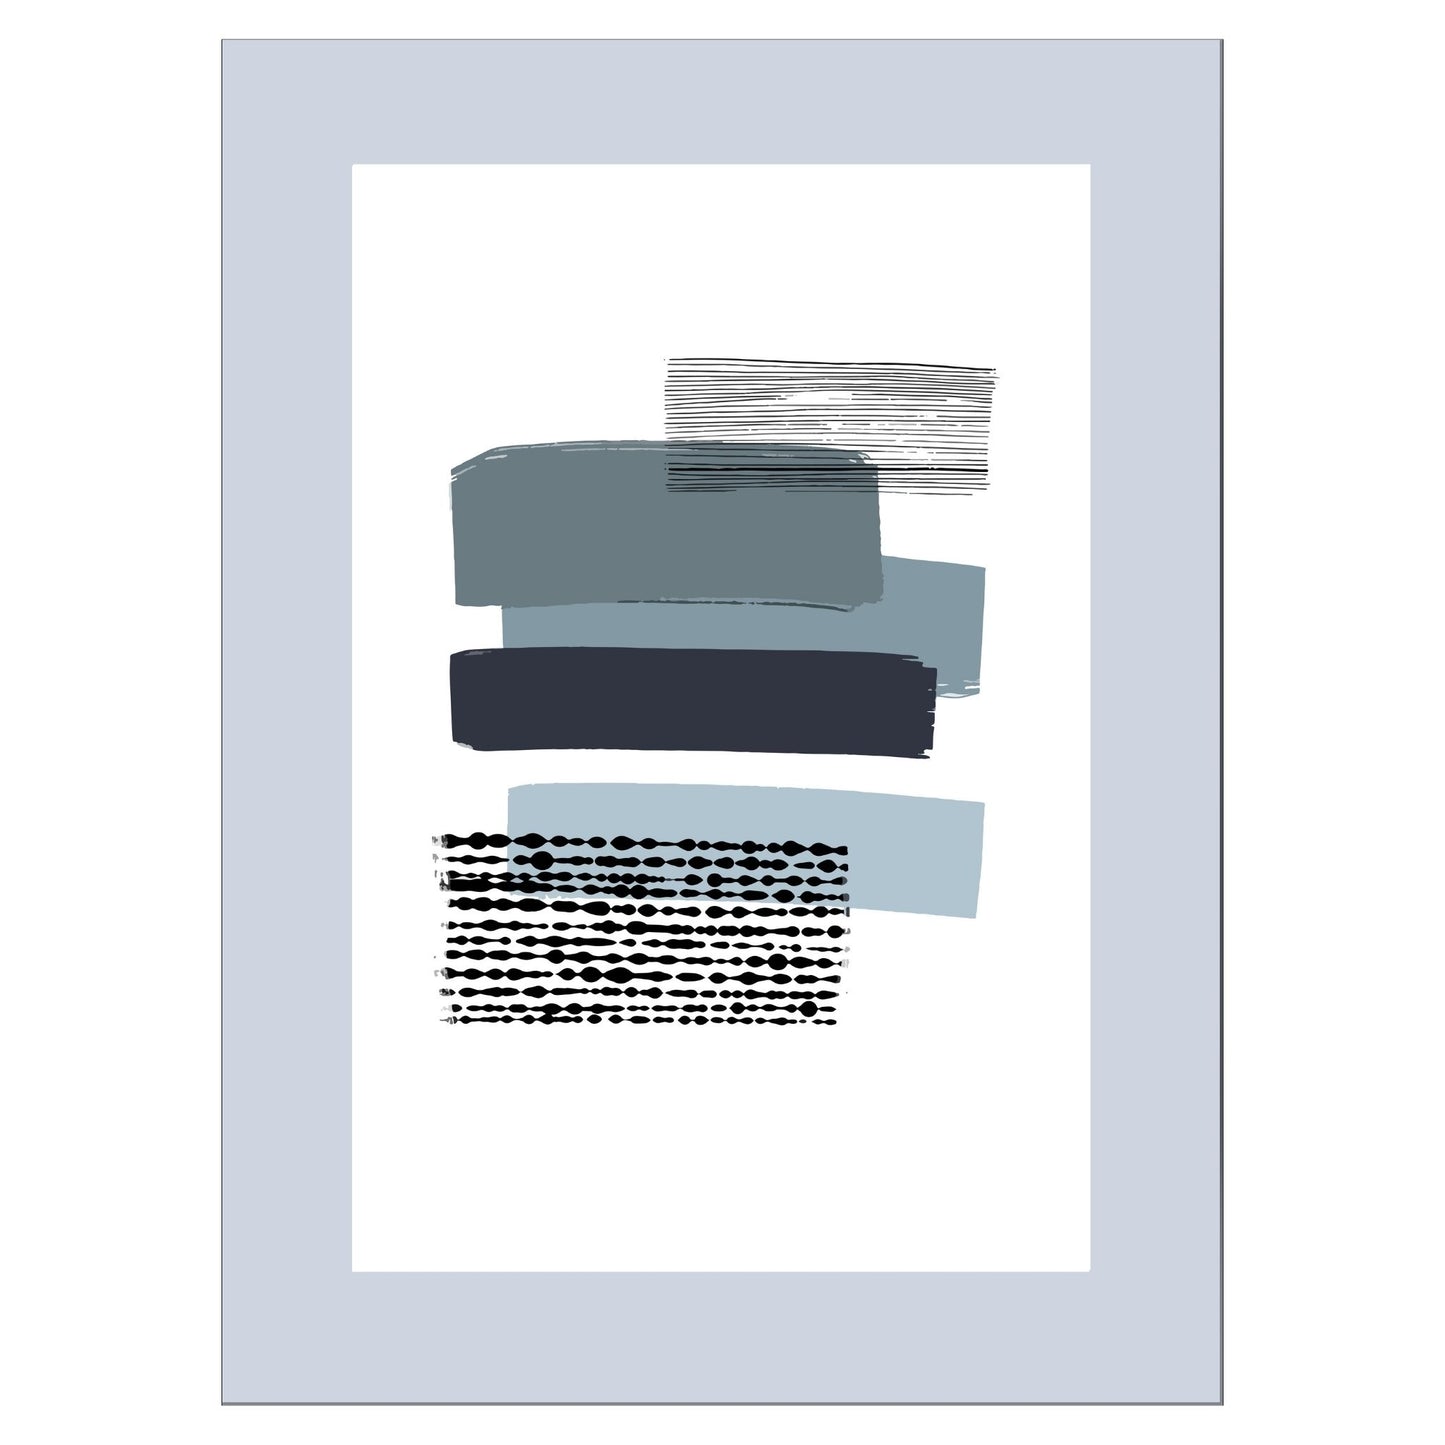 Grafisk plakat i abstrakt horisontalt stripete mønster i blått og grått på hvit bakgrunn. Plakaten har en grå kant som gir dybde og fremhever motivet.